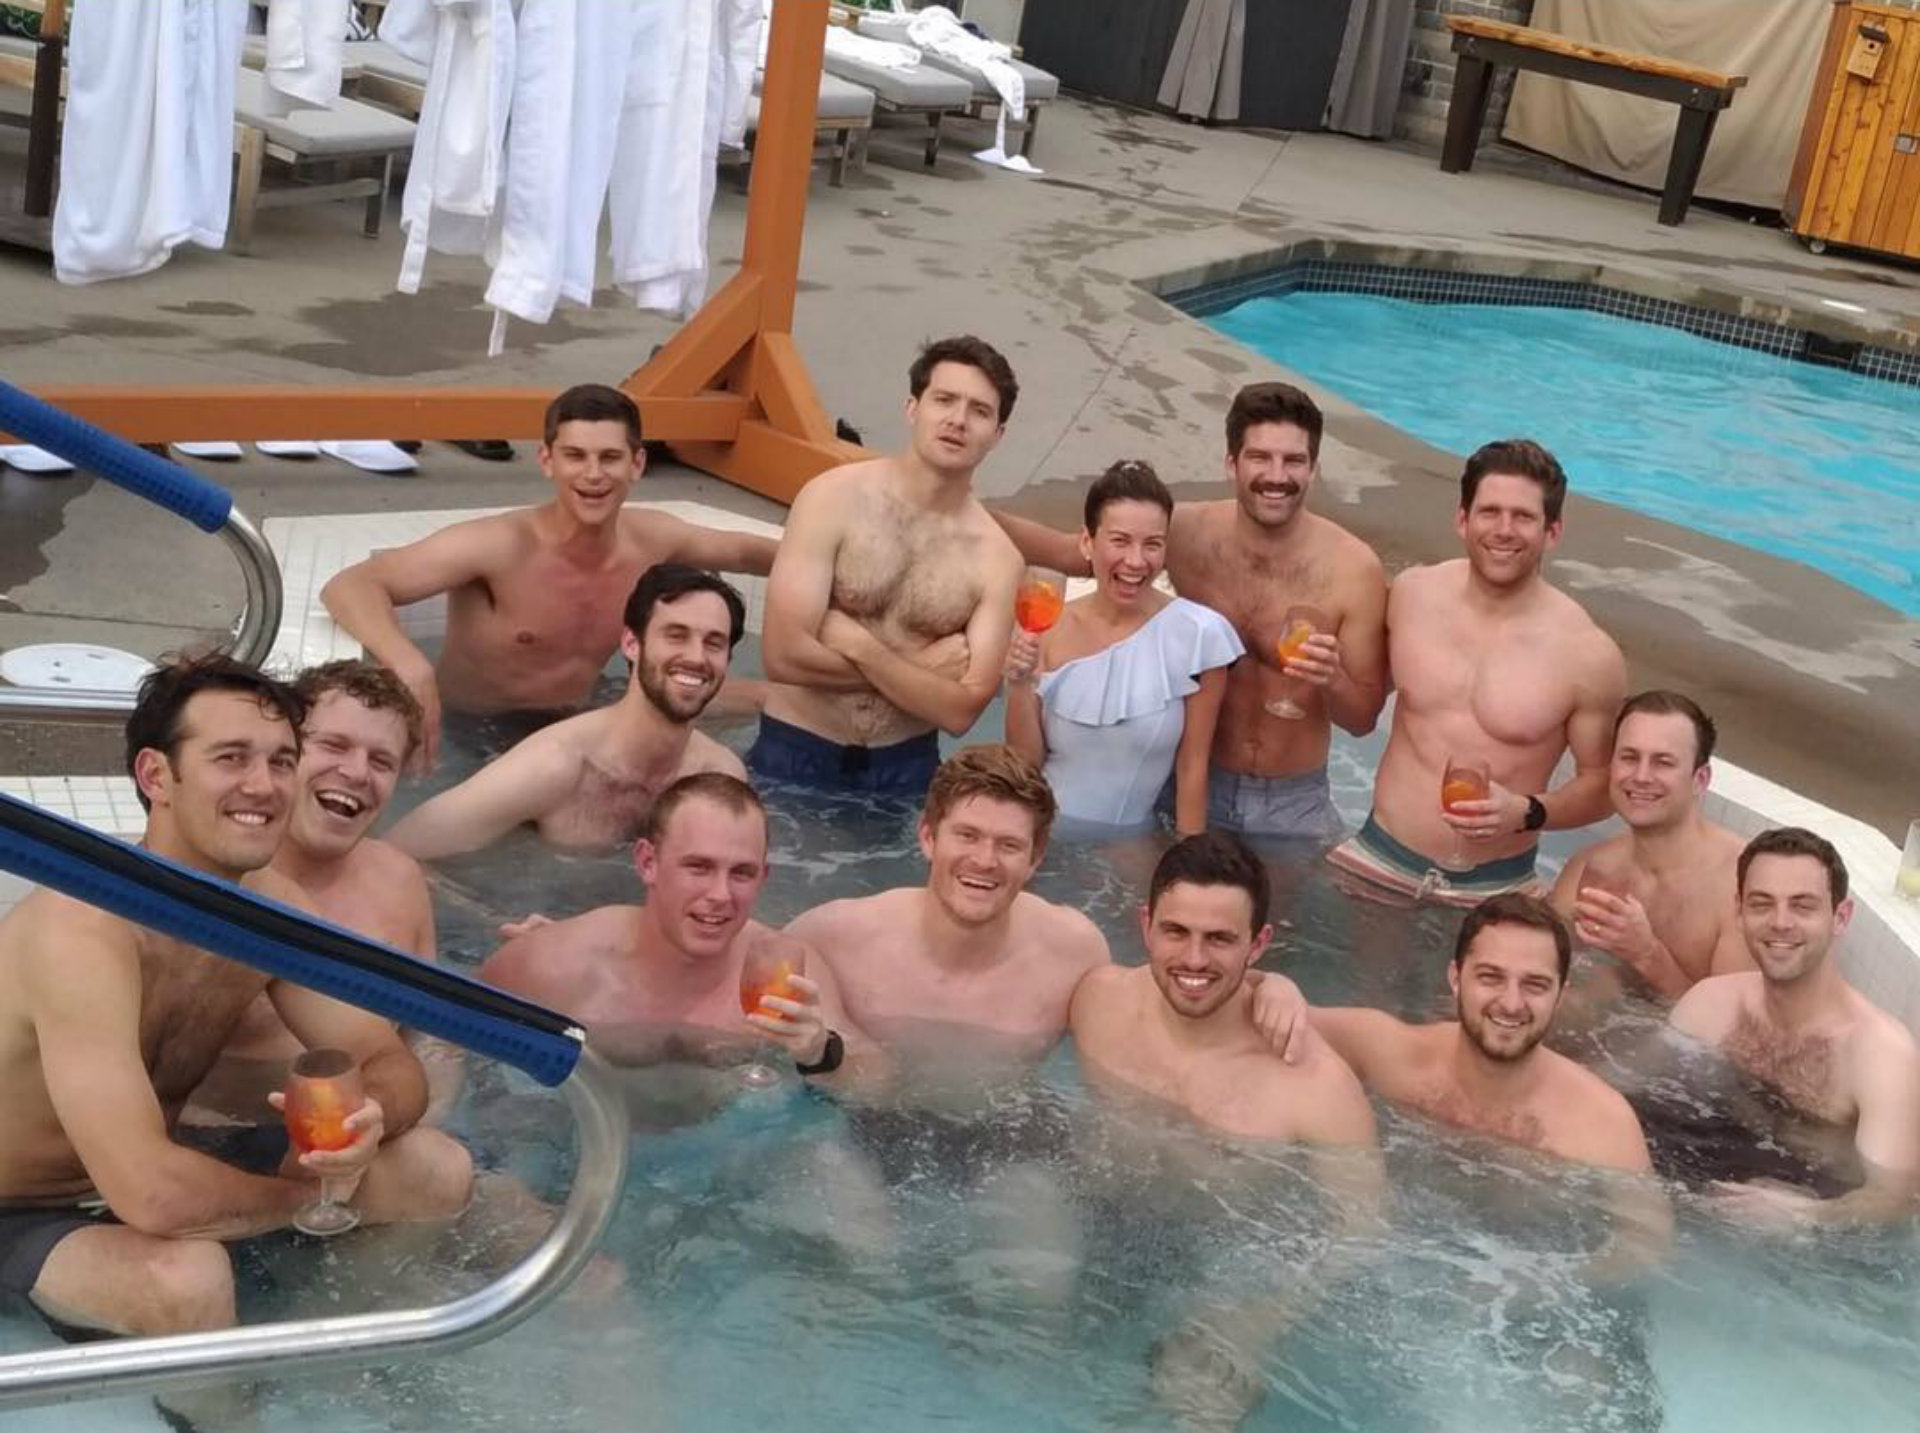 La fotografía junto a 13 hombres que Ingrid compartió en Instagram